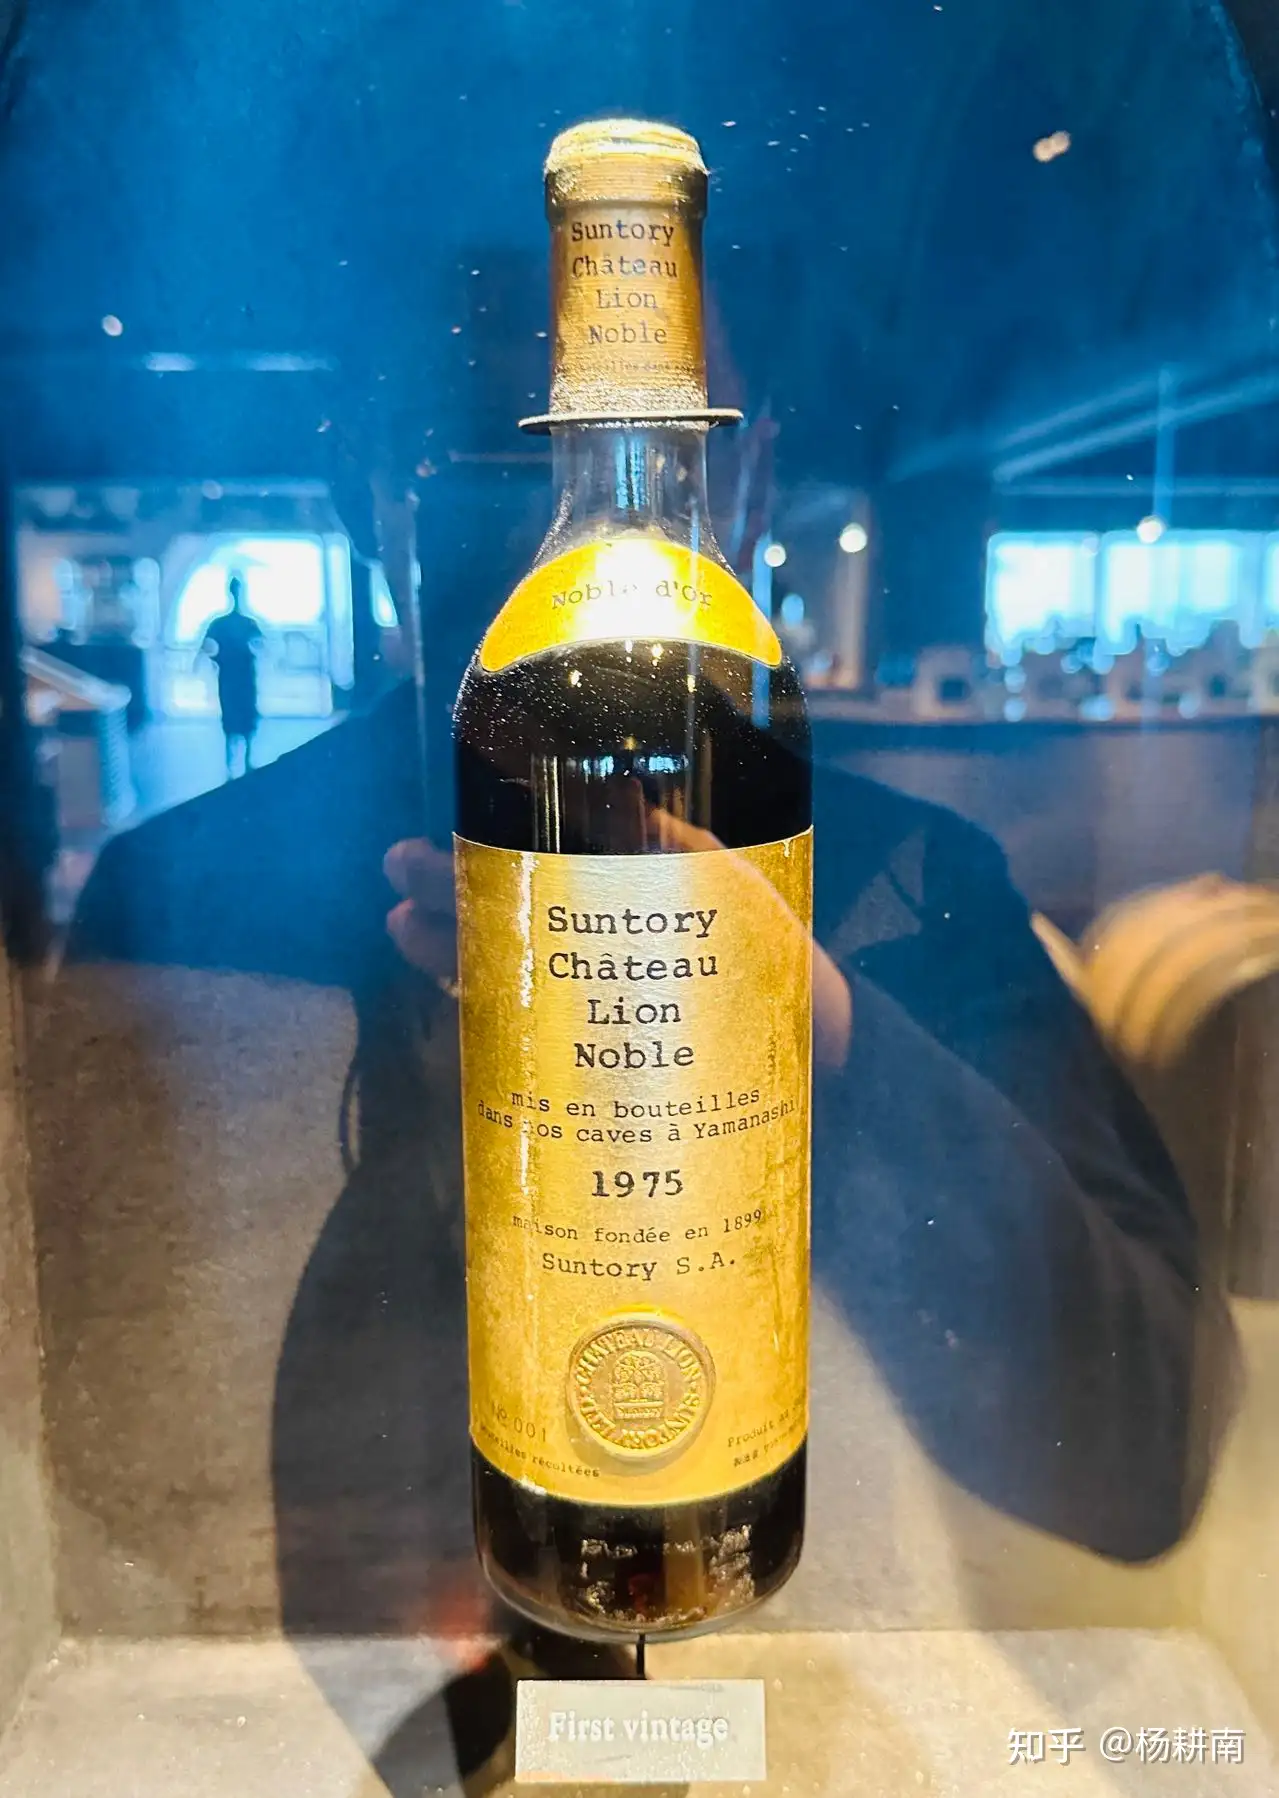 サントリー シャトーリオン ノーブル・ドール 貴腐 ワイン 1983 貴重 